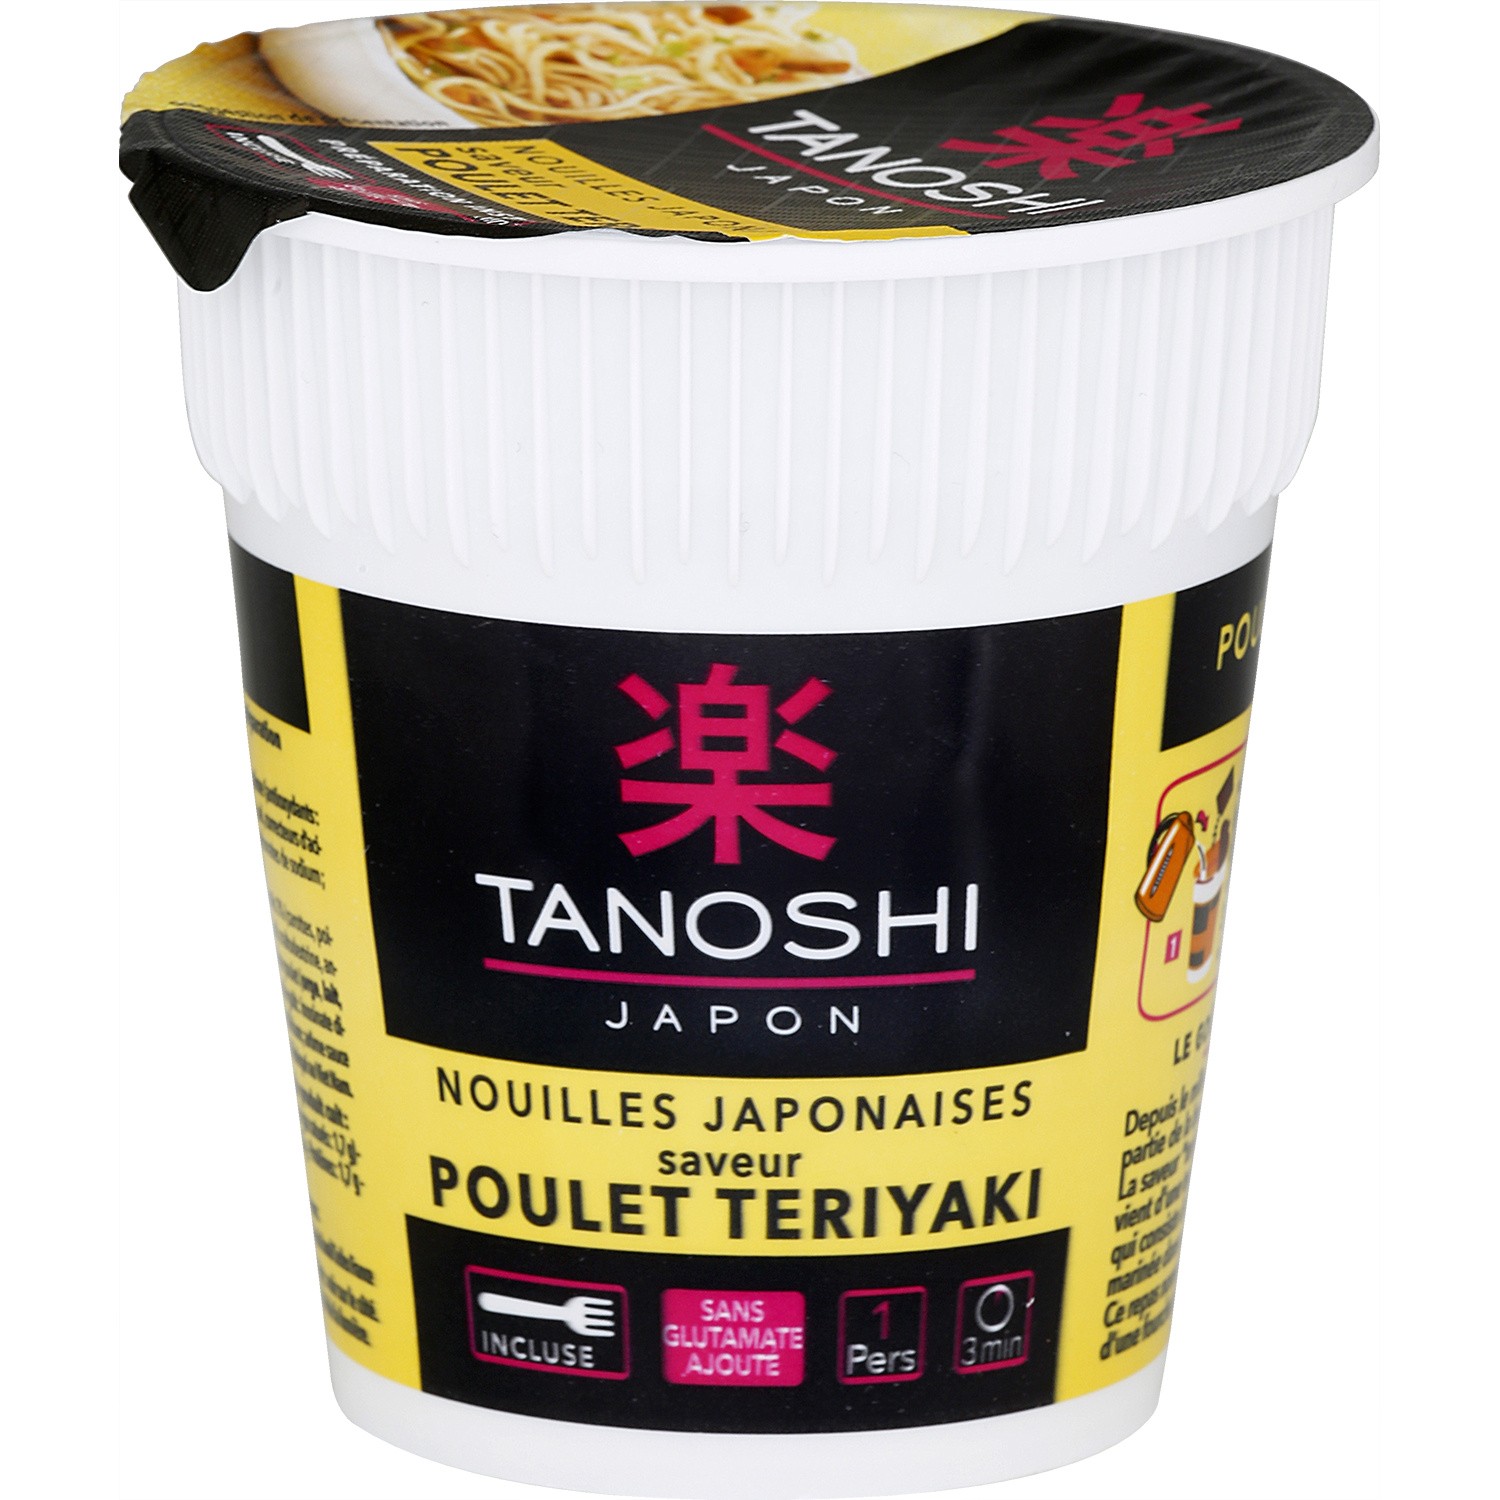  Nouilles instantanée poulet Teriyaki TANOSHI TANOSHI  3229820762043